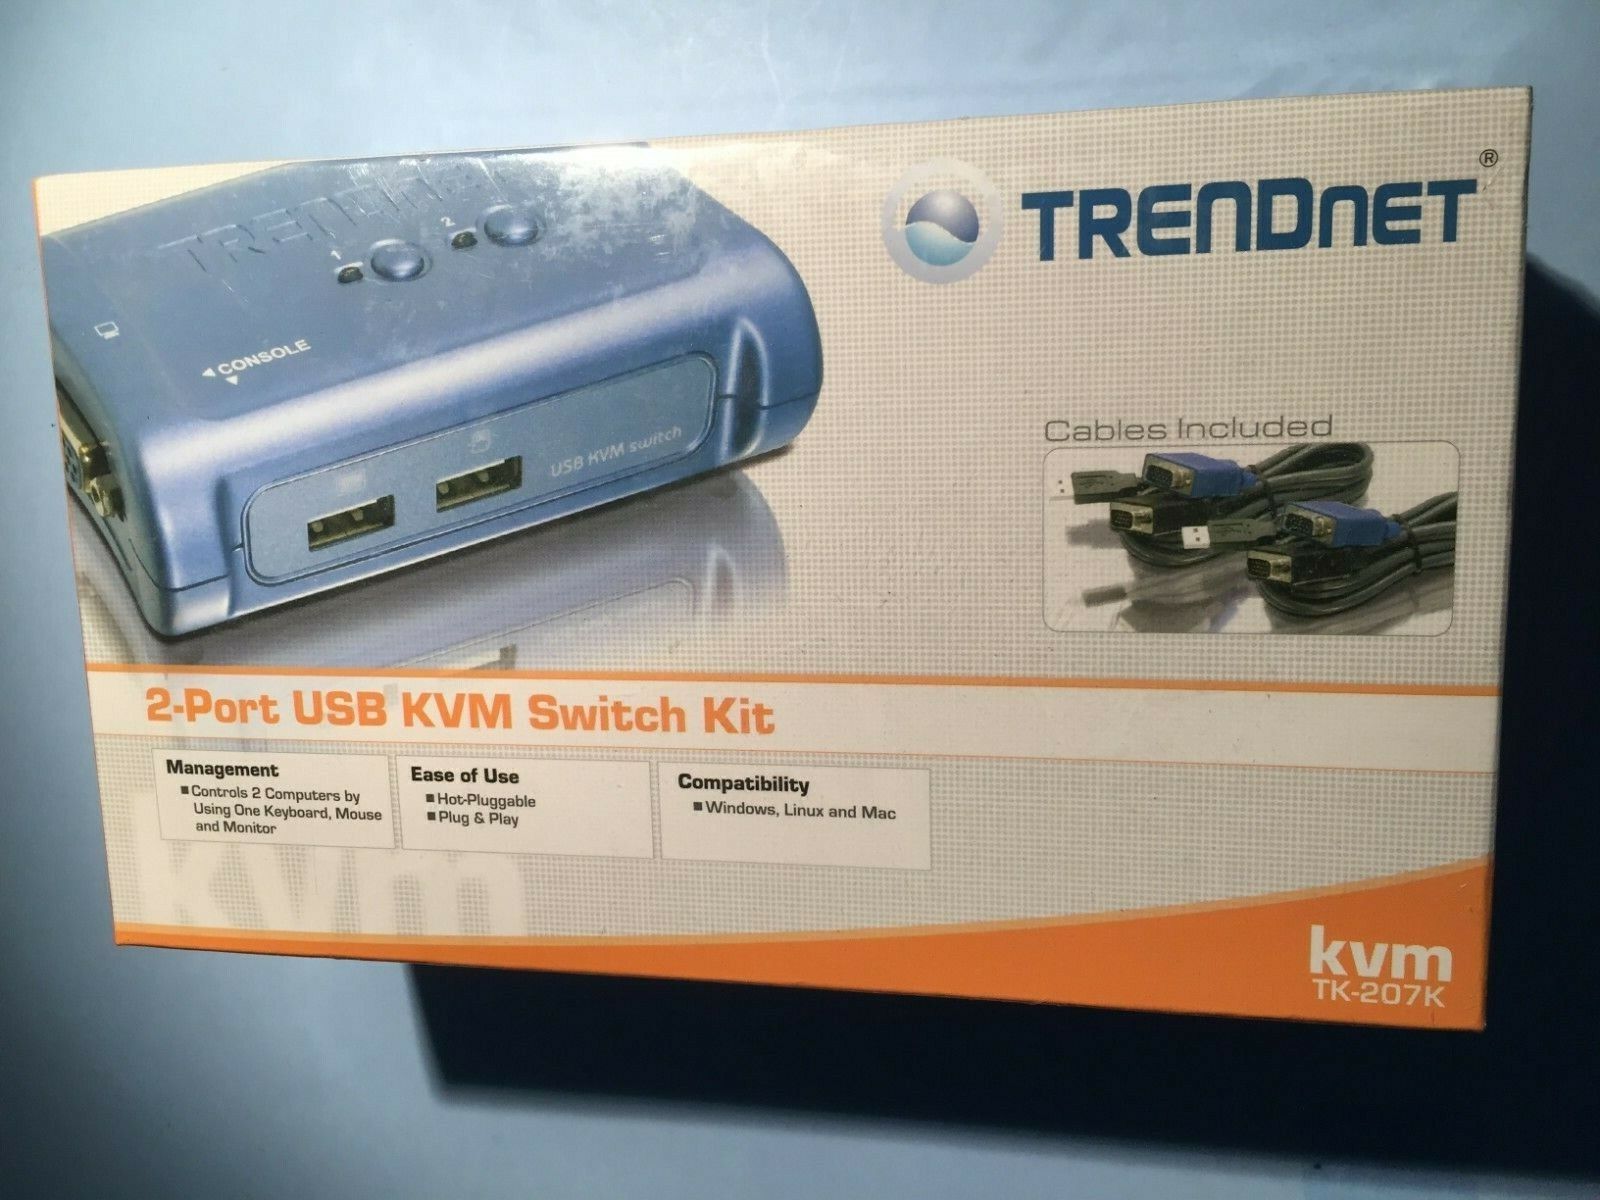 NEW TRENDnet 2-Port USB KVM Switch and Cable Kit TK-207K VGA USB 2 Port